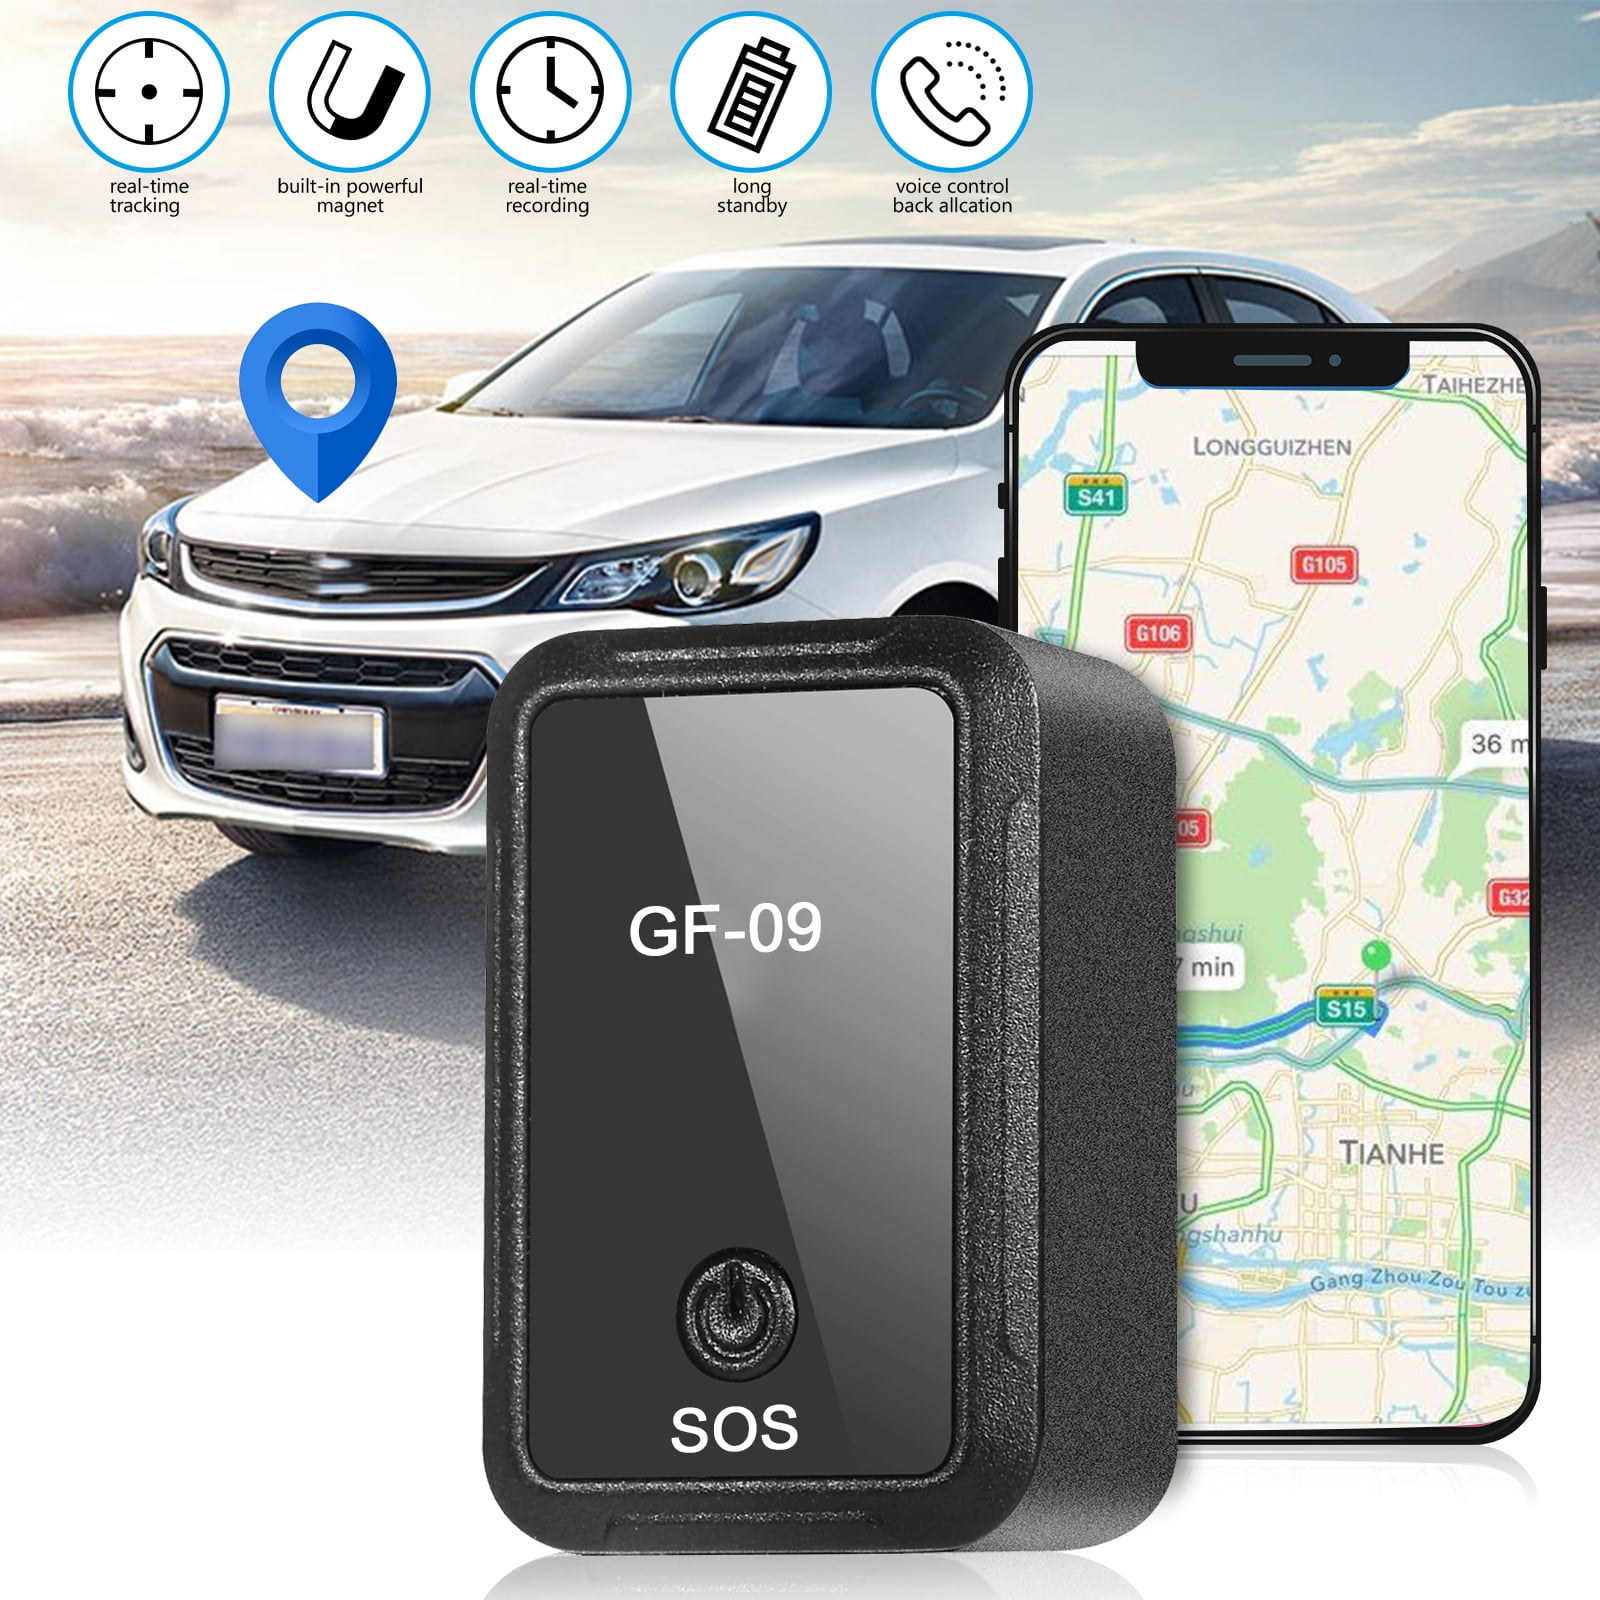 Mini localisateur GPS carte SIM pour véhicule puissant magnétique mini gps  tracker localisateur de suivi GPS